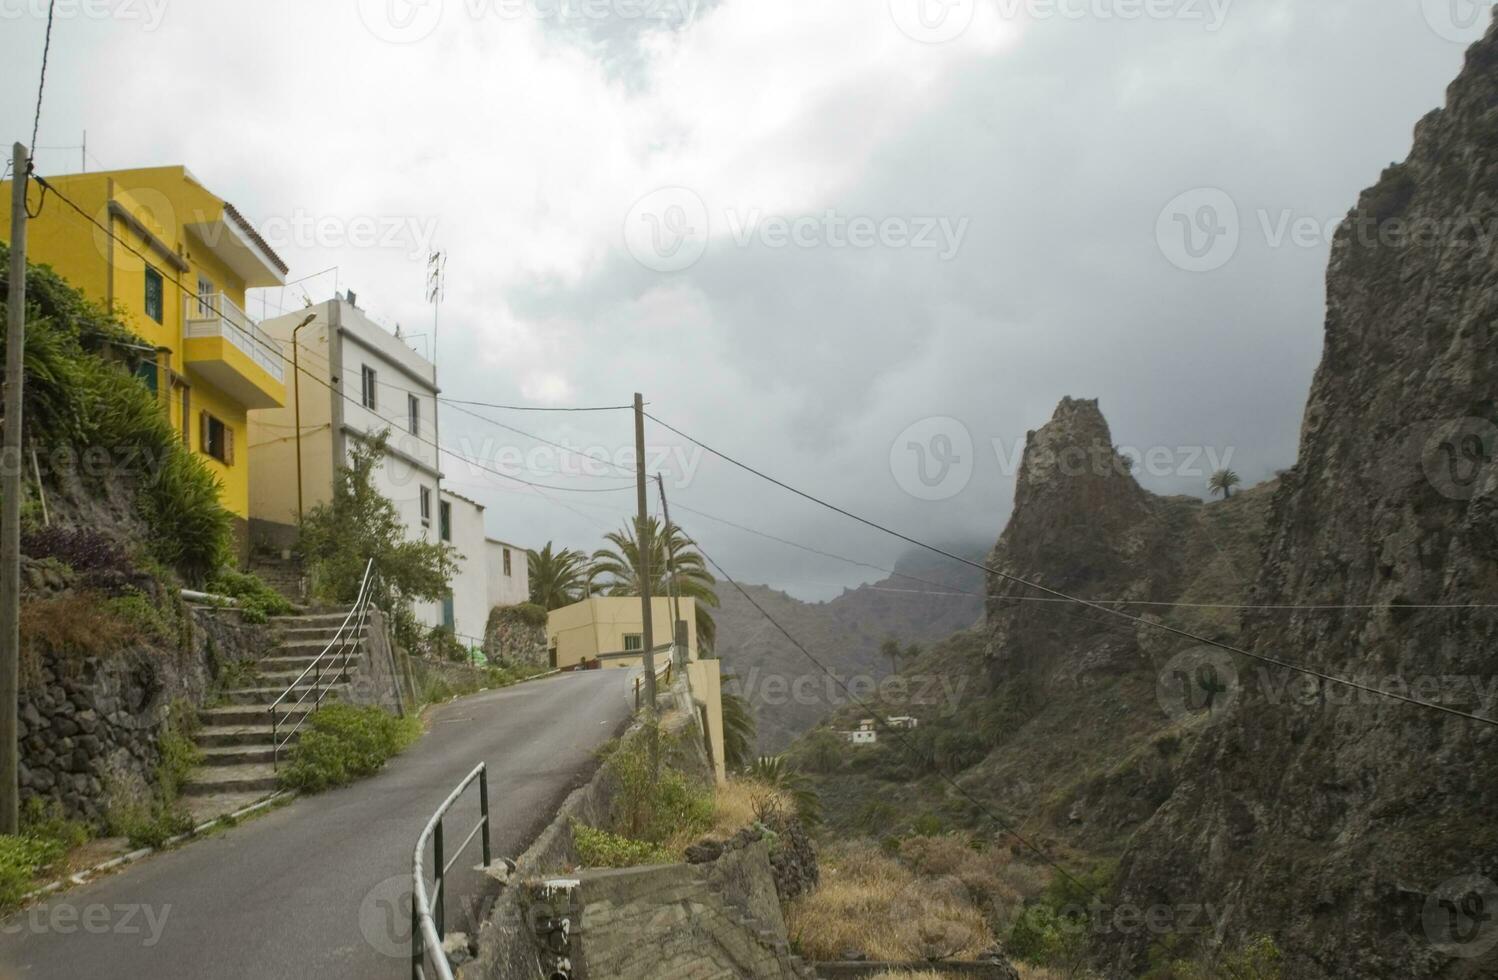 original coloré Maisons sur le Espagnol île de canari gomera photo